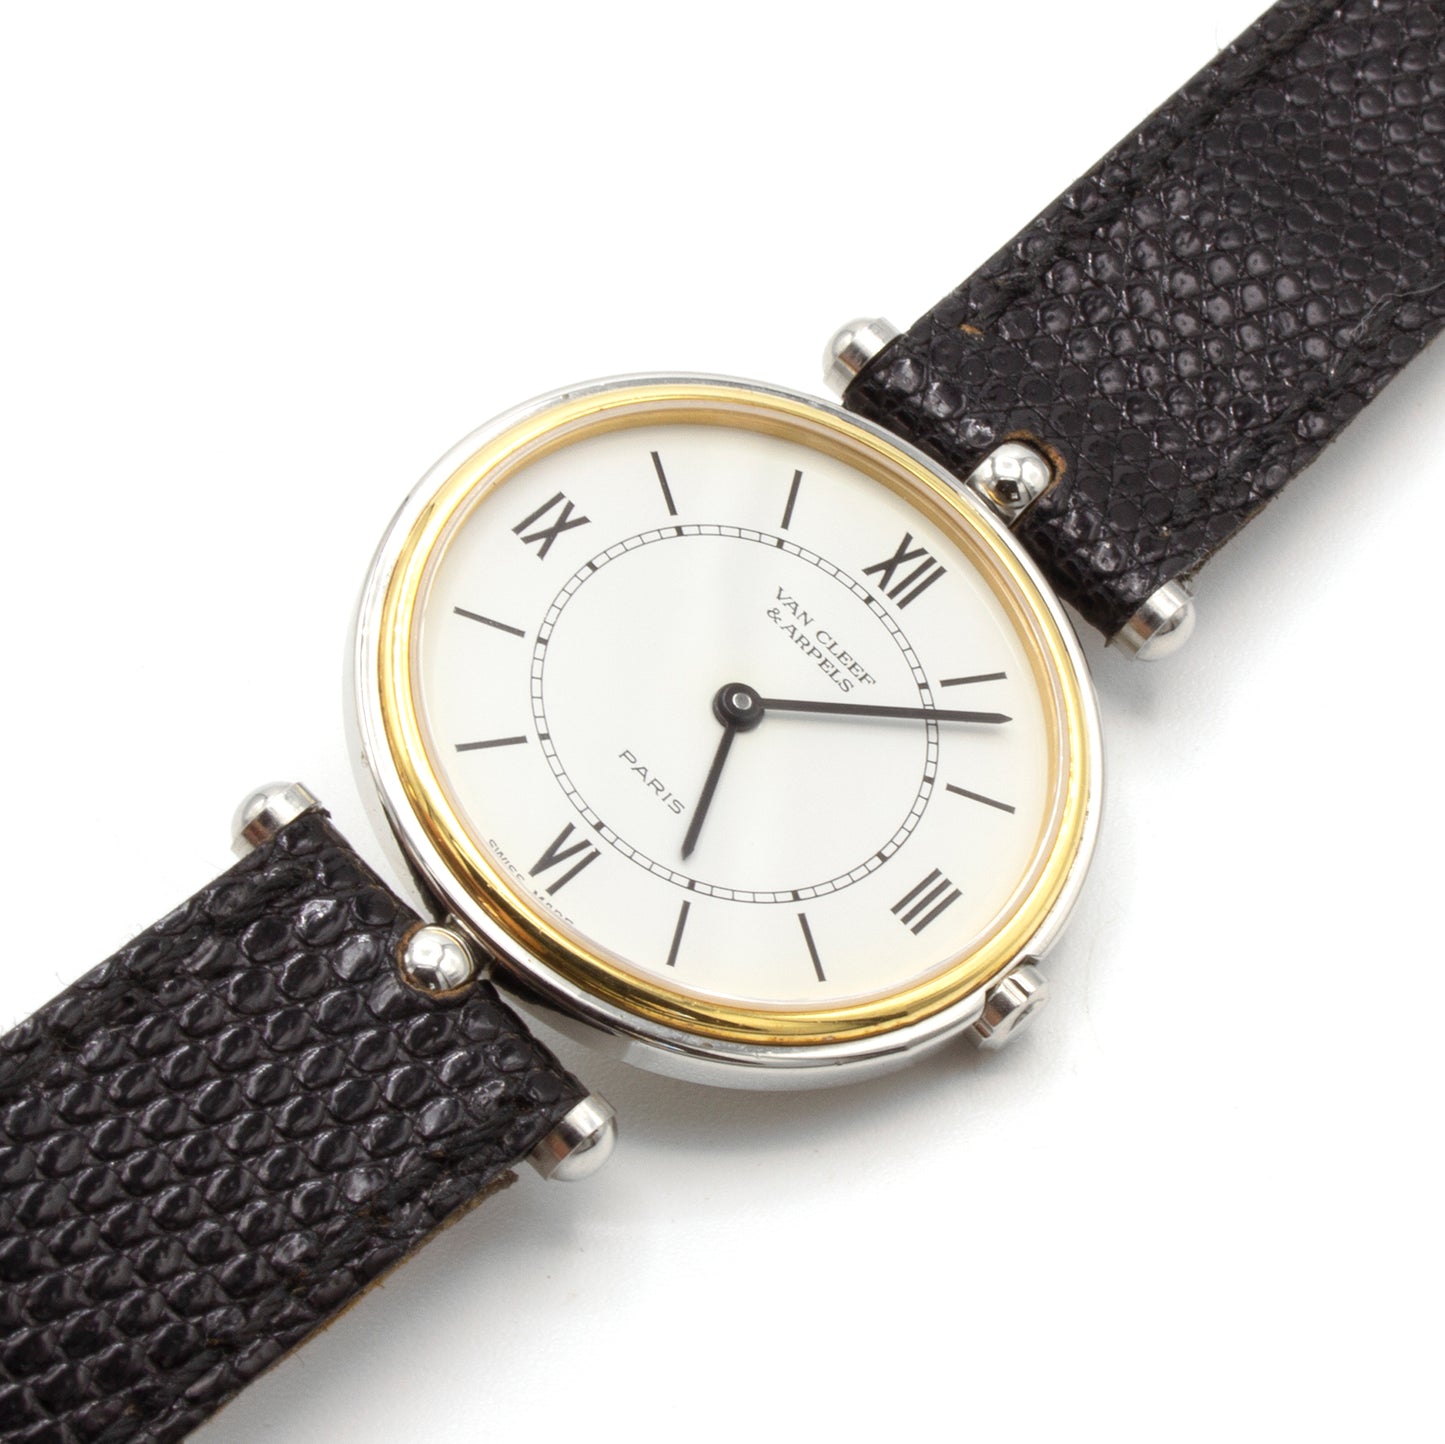 Van Cleef & Arpels La Classique watch